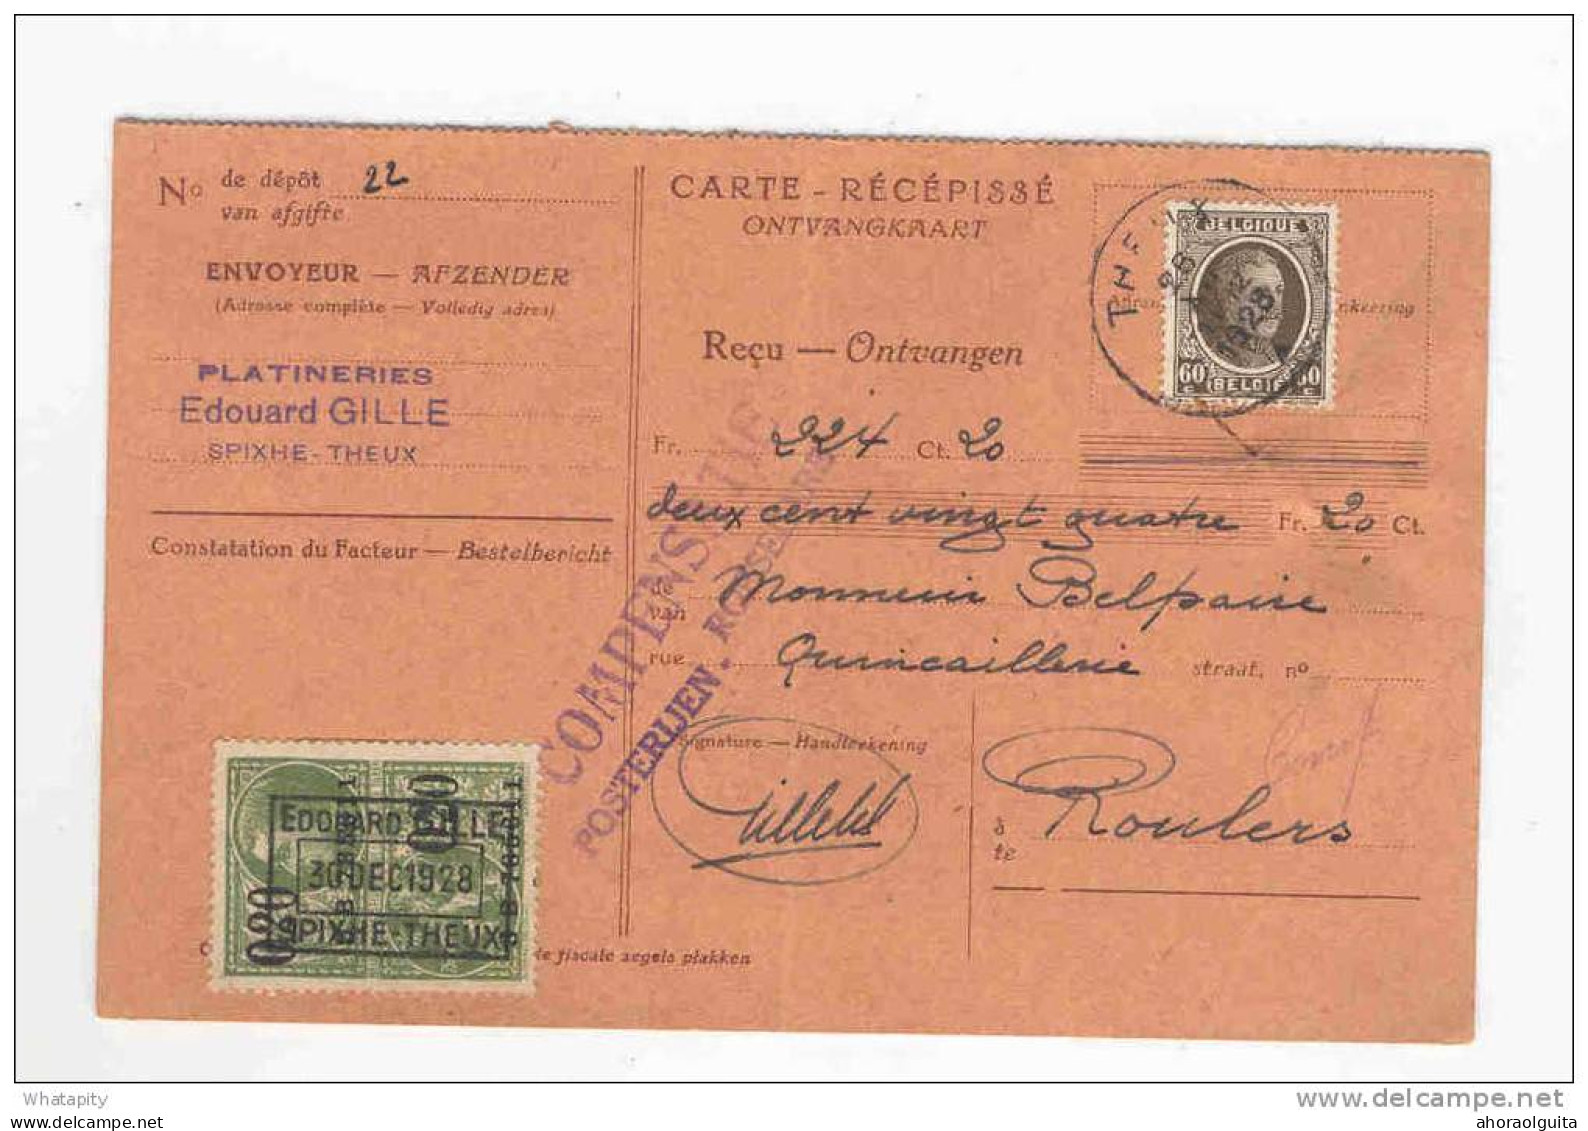 2 Cartes Récépissés 1928/1936 Vers ROULERS - Deux Griffes Différentes Compensatie Posterijen ROESELARE   --  KK818 - Post-Faltblätter